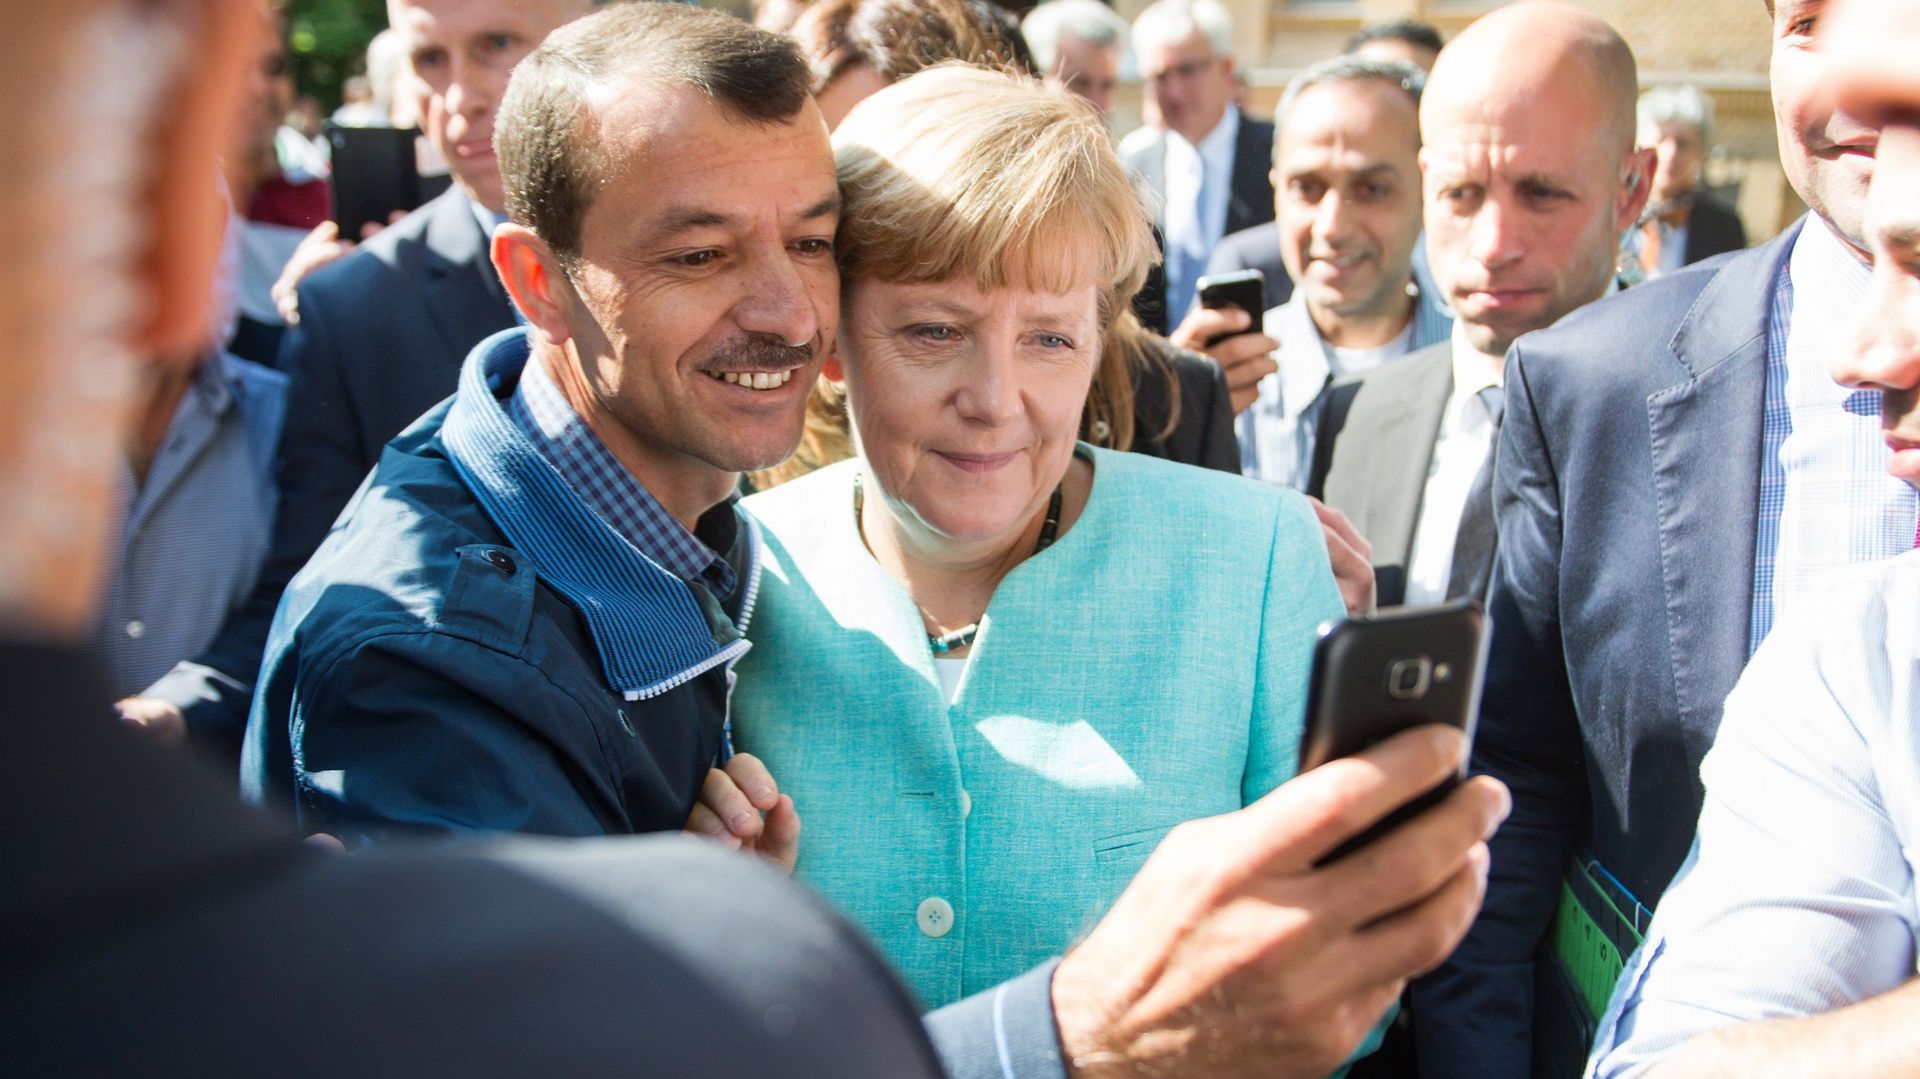 Un demandeur d'asile prend un selfie avec la chancelière allemande, Angela Merkel,  à la suite de sa visite dans une succursale de l'Office fédéral des migrations et des réfugiés et dans un camp de demandeurs d'asile à Berlin le 10 septembre 2015